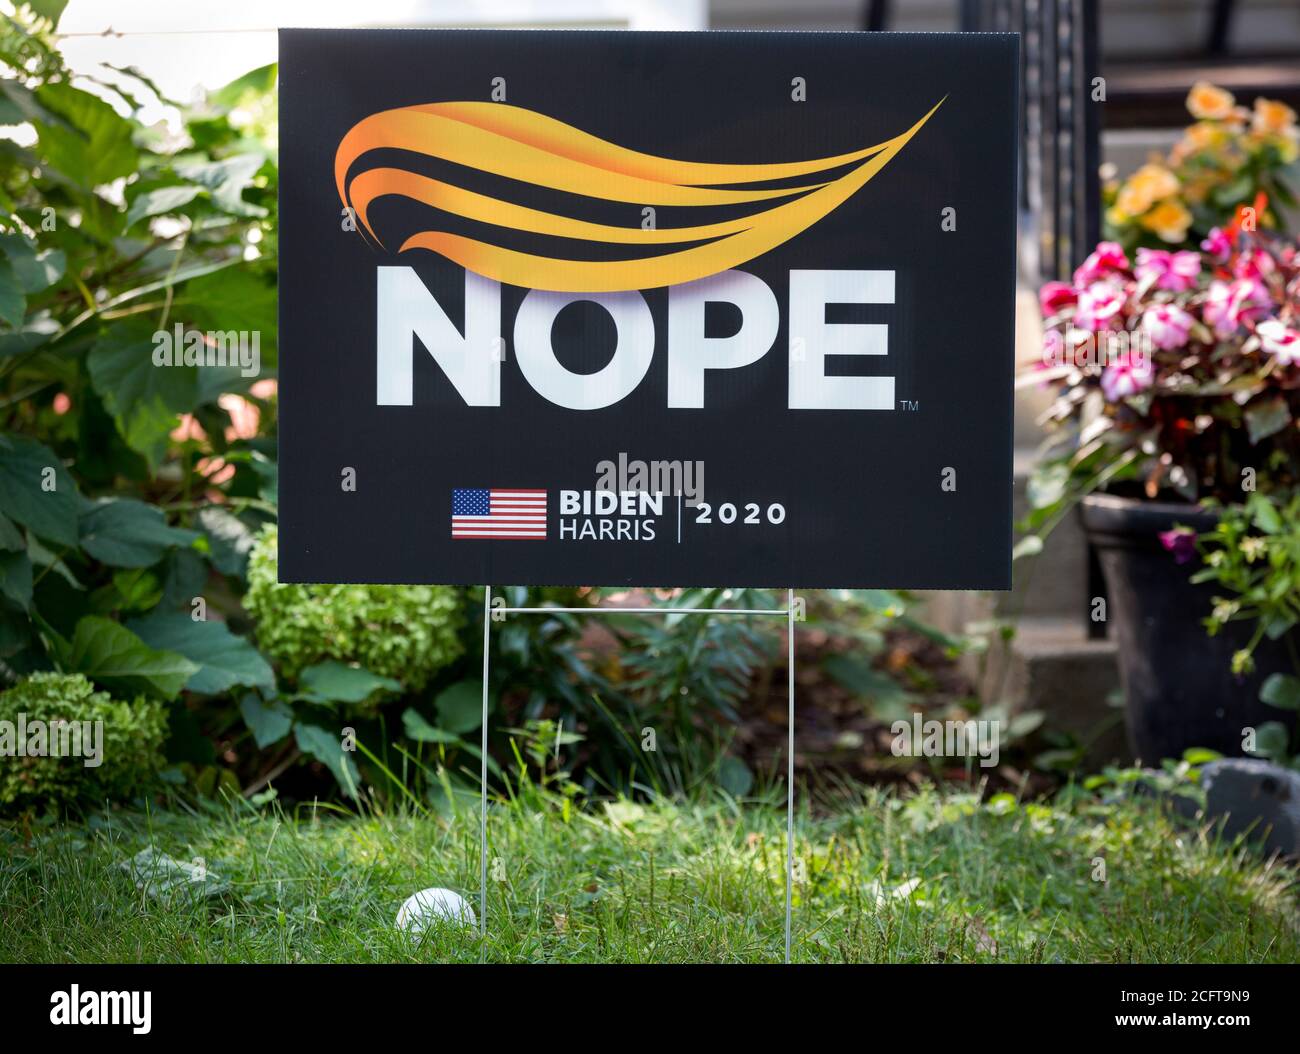 Un 2020 Joe Biden e Kamala Harris anti-Donald Trump presidente cantiere segno con un disegno di uno stile di capelli arancione e la parola Nope. Foto Stock